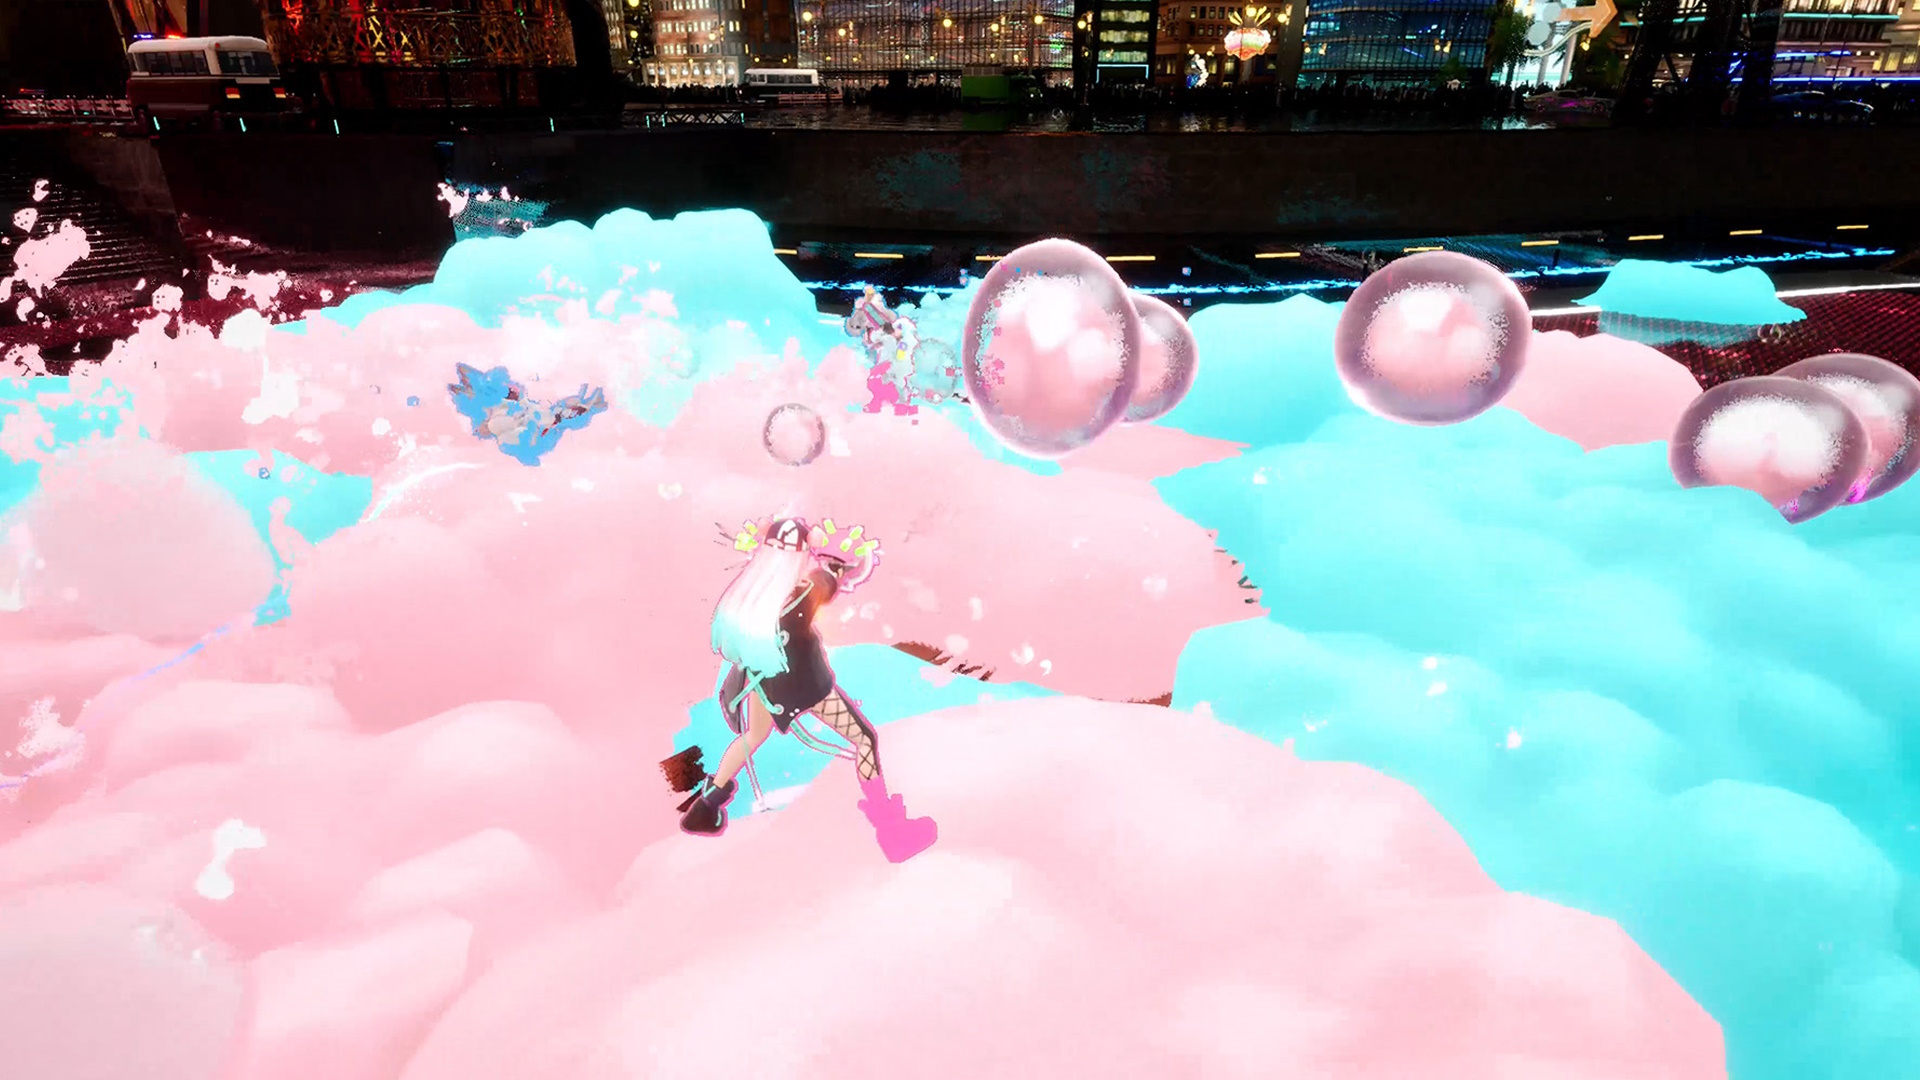 Les personnages de Foamstars s'affrontent sur un champ de bataille d'arène recouvert de mousse rose et bleue